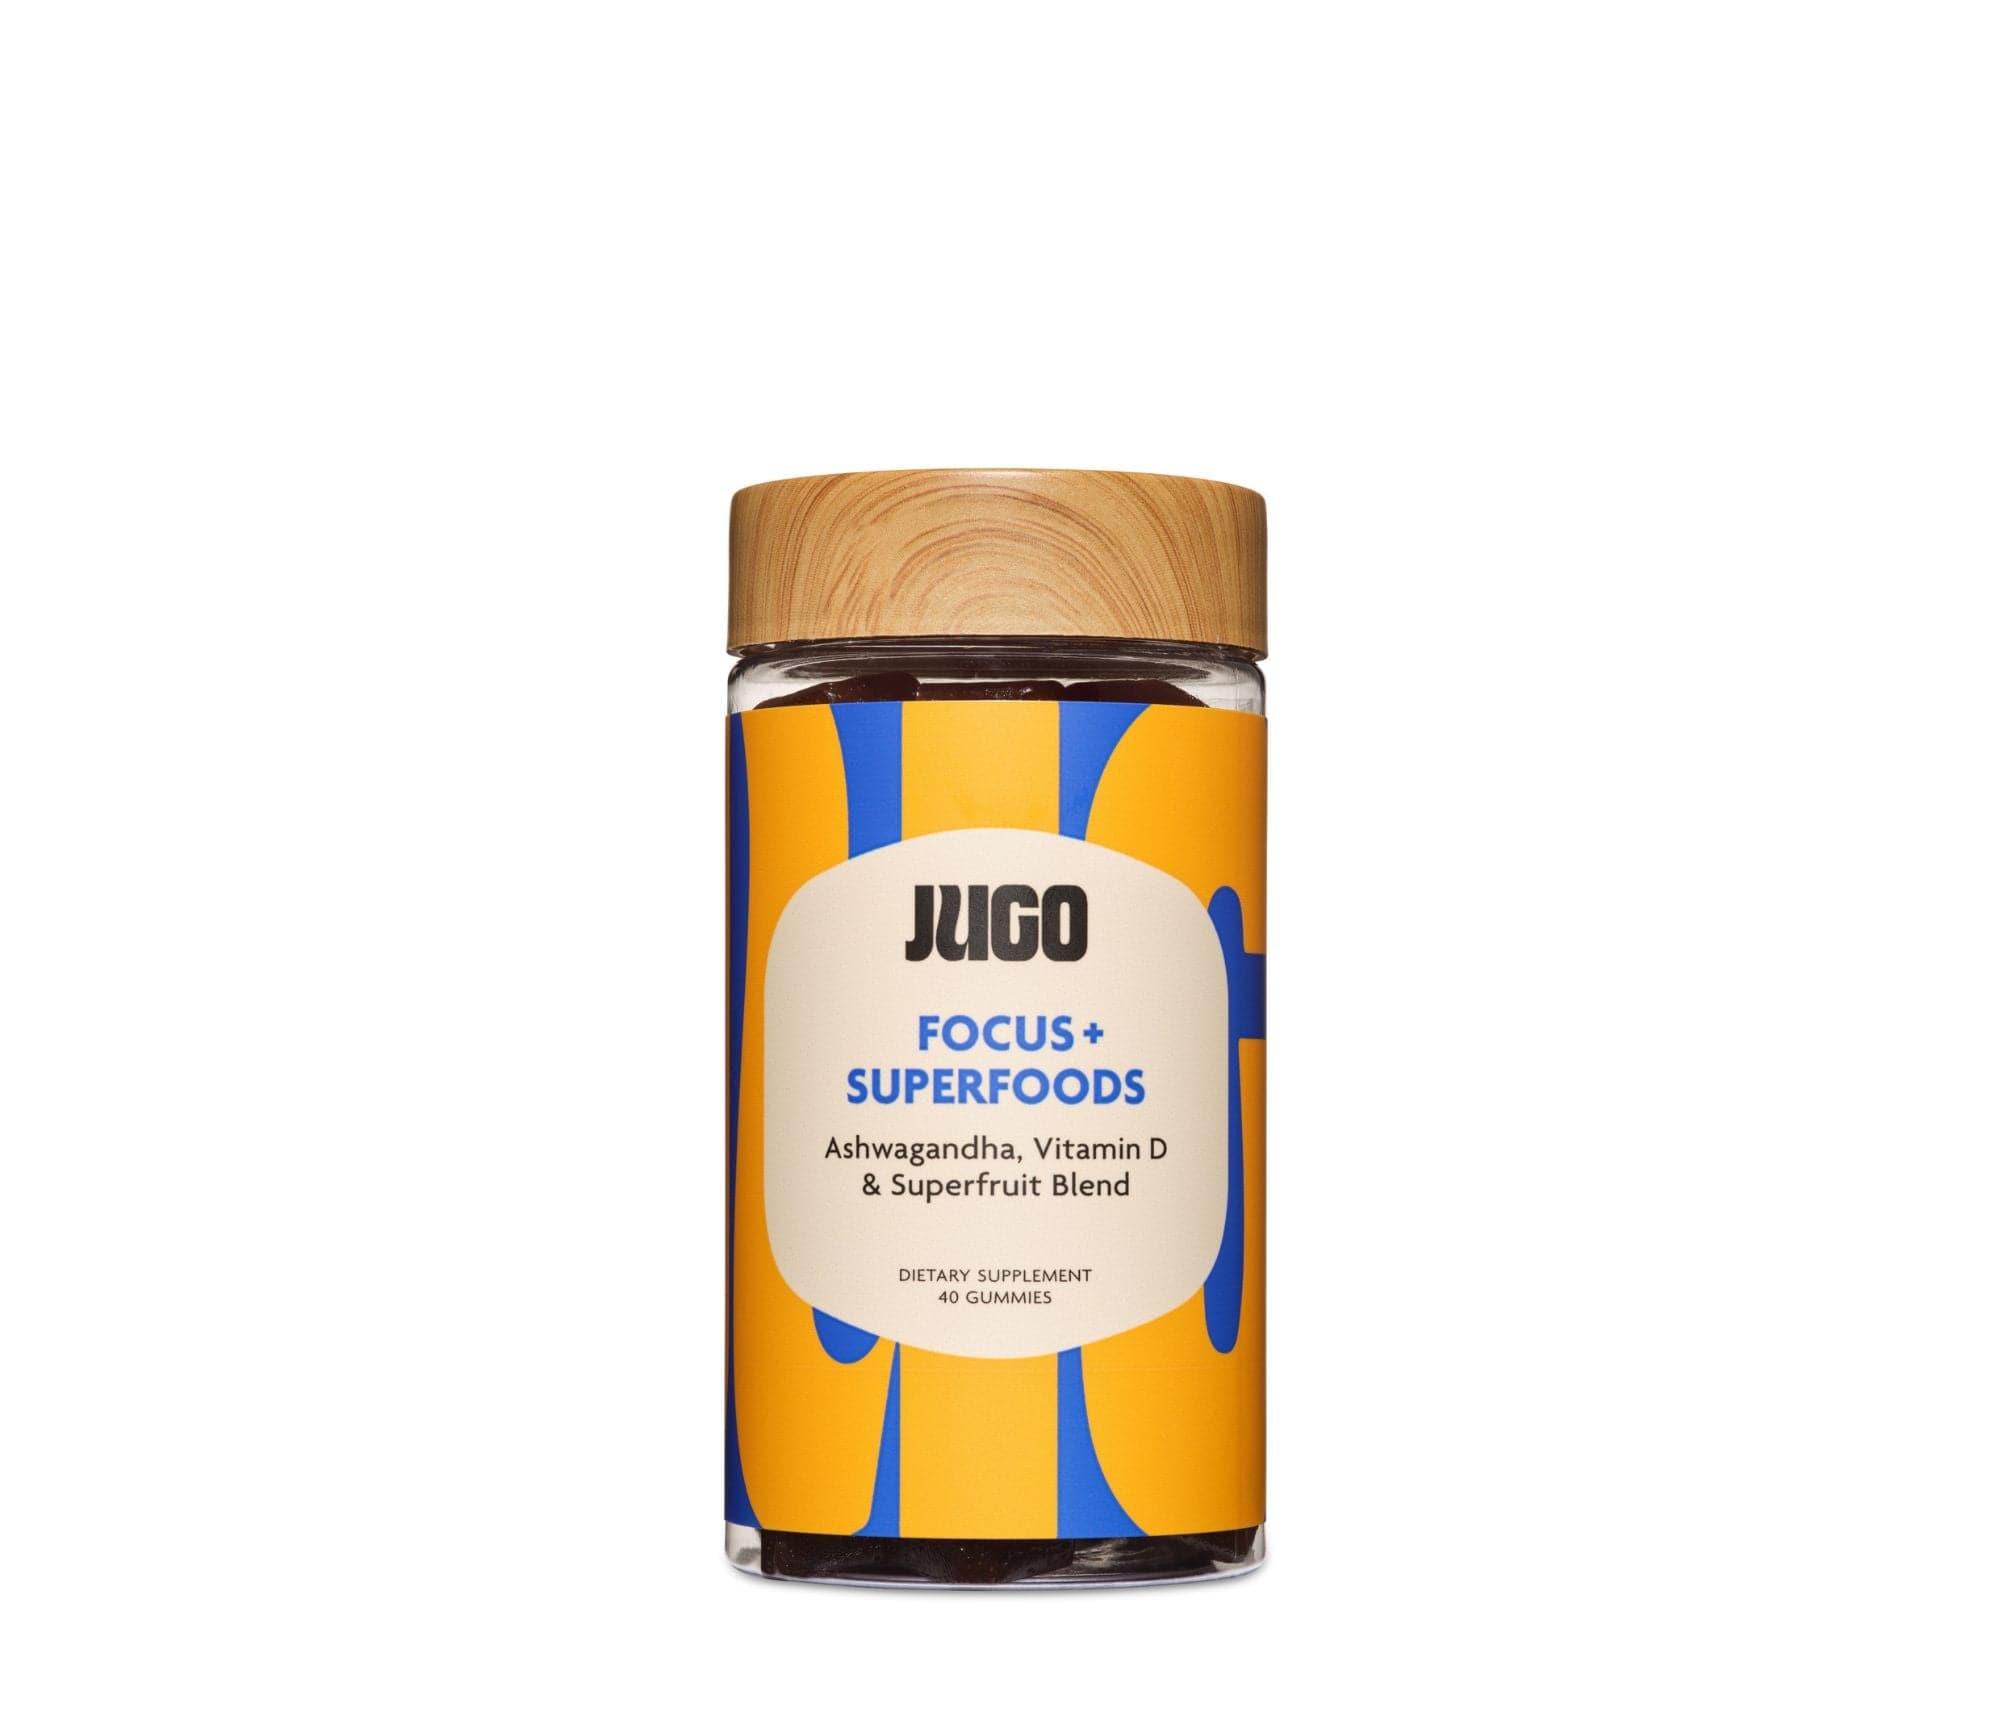 JUGO FOCUS + SUPERFOODS gummies